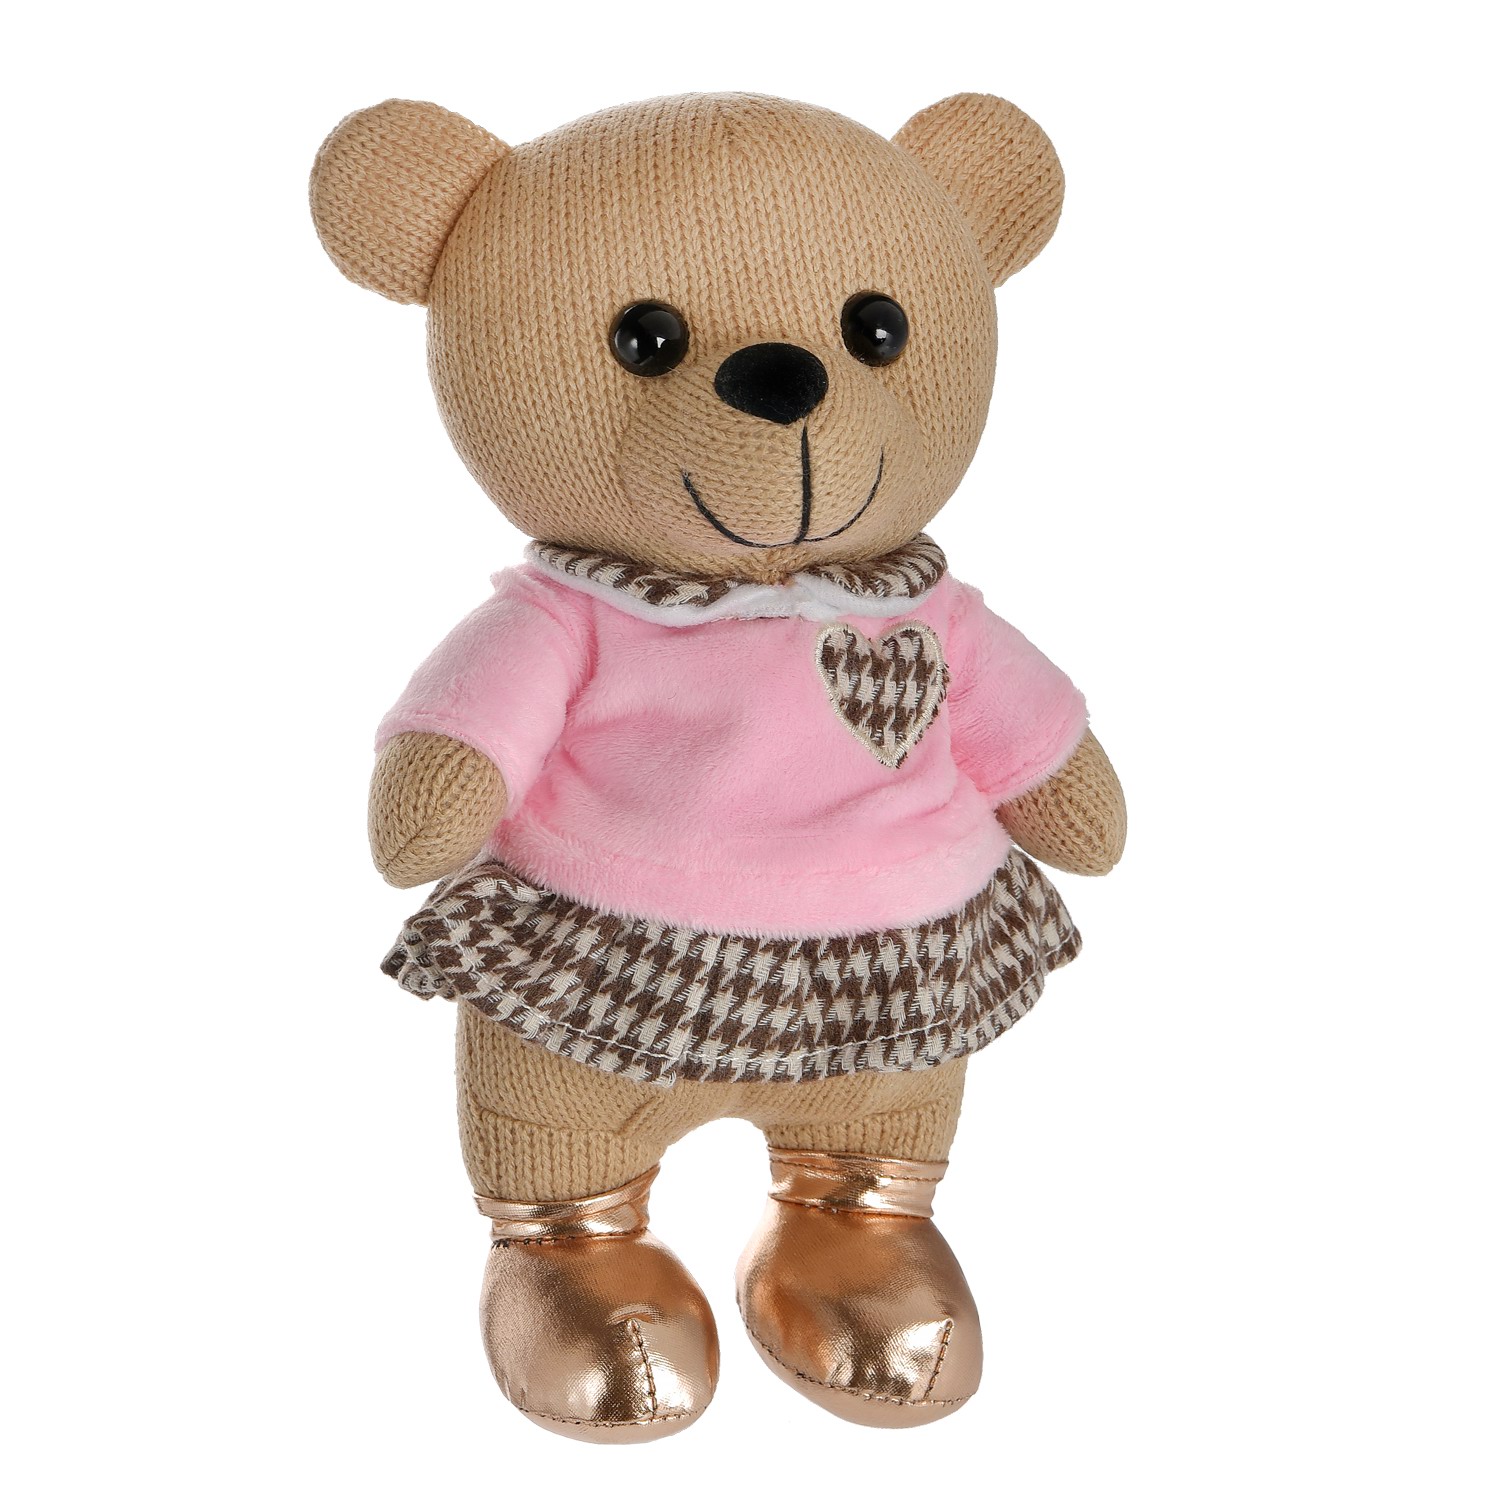 Мягкая игрушка Abtoys Knitted. Мишка вязаный девочка в розовом джемпере 22см M4864 мягкая игрушка abtoys knitted хамелеон вязаный 34см